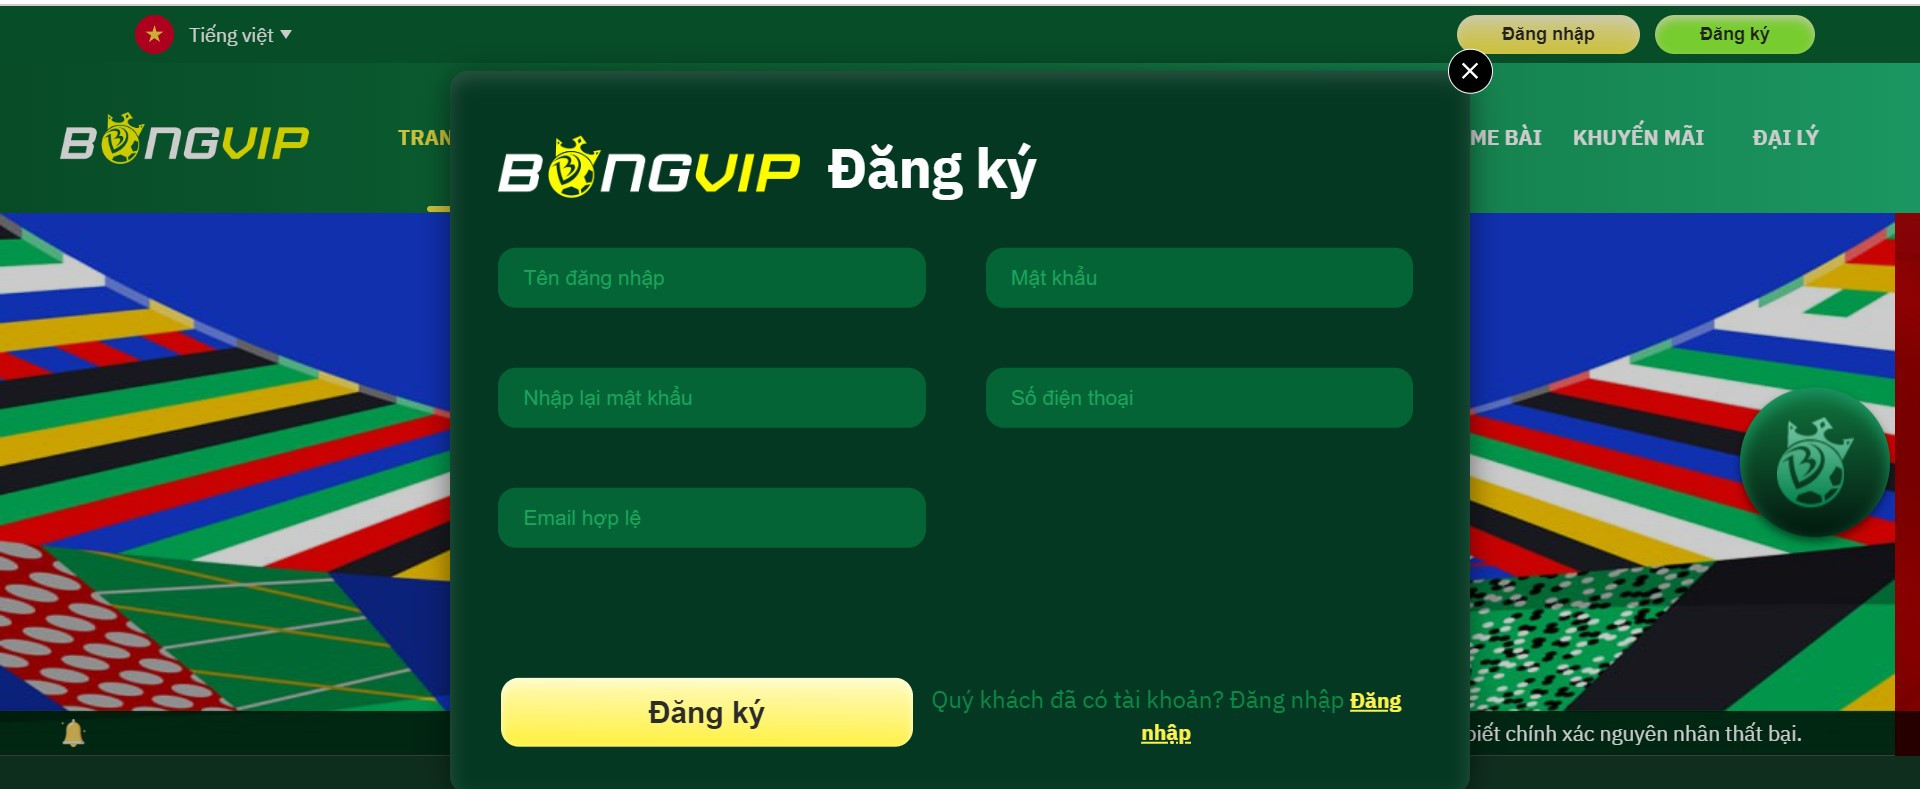 Người chơi điền đầy đủ thông tin để thực hiện đăng ký tài khoản Bongvip trên máy tính